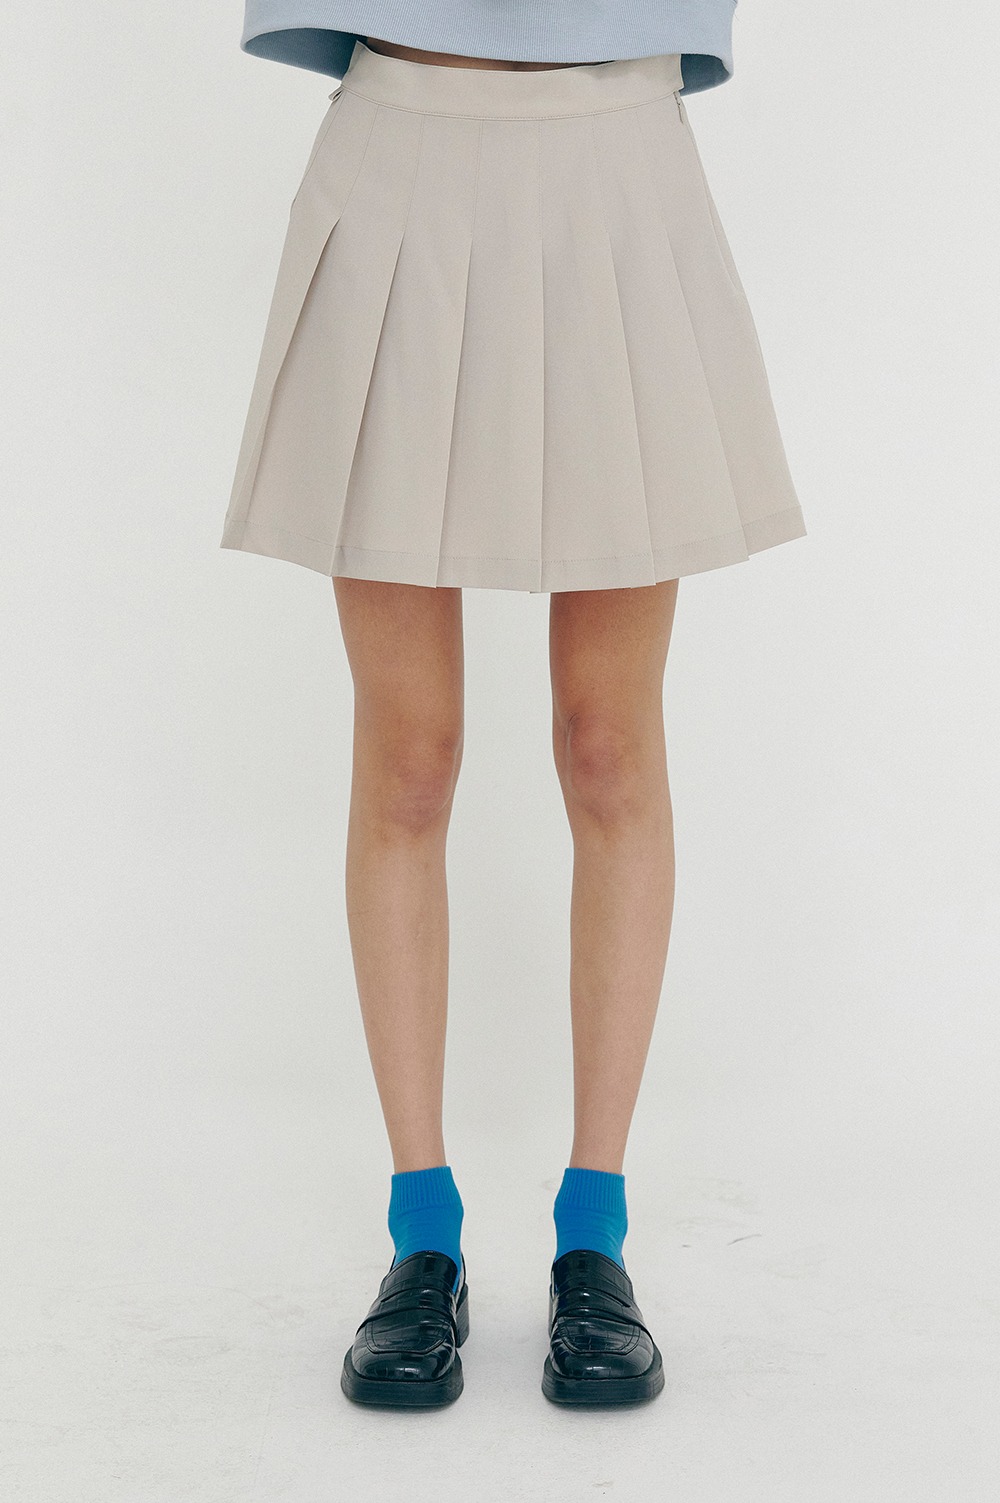 clove - [SS21 clove] New Pleated Skirt Beige